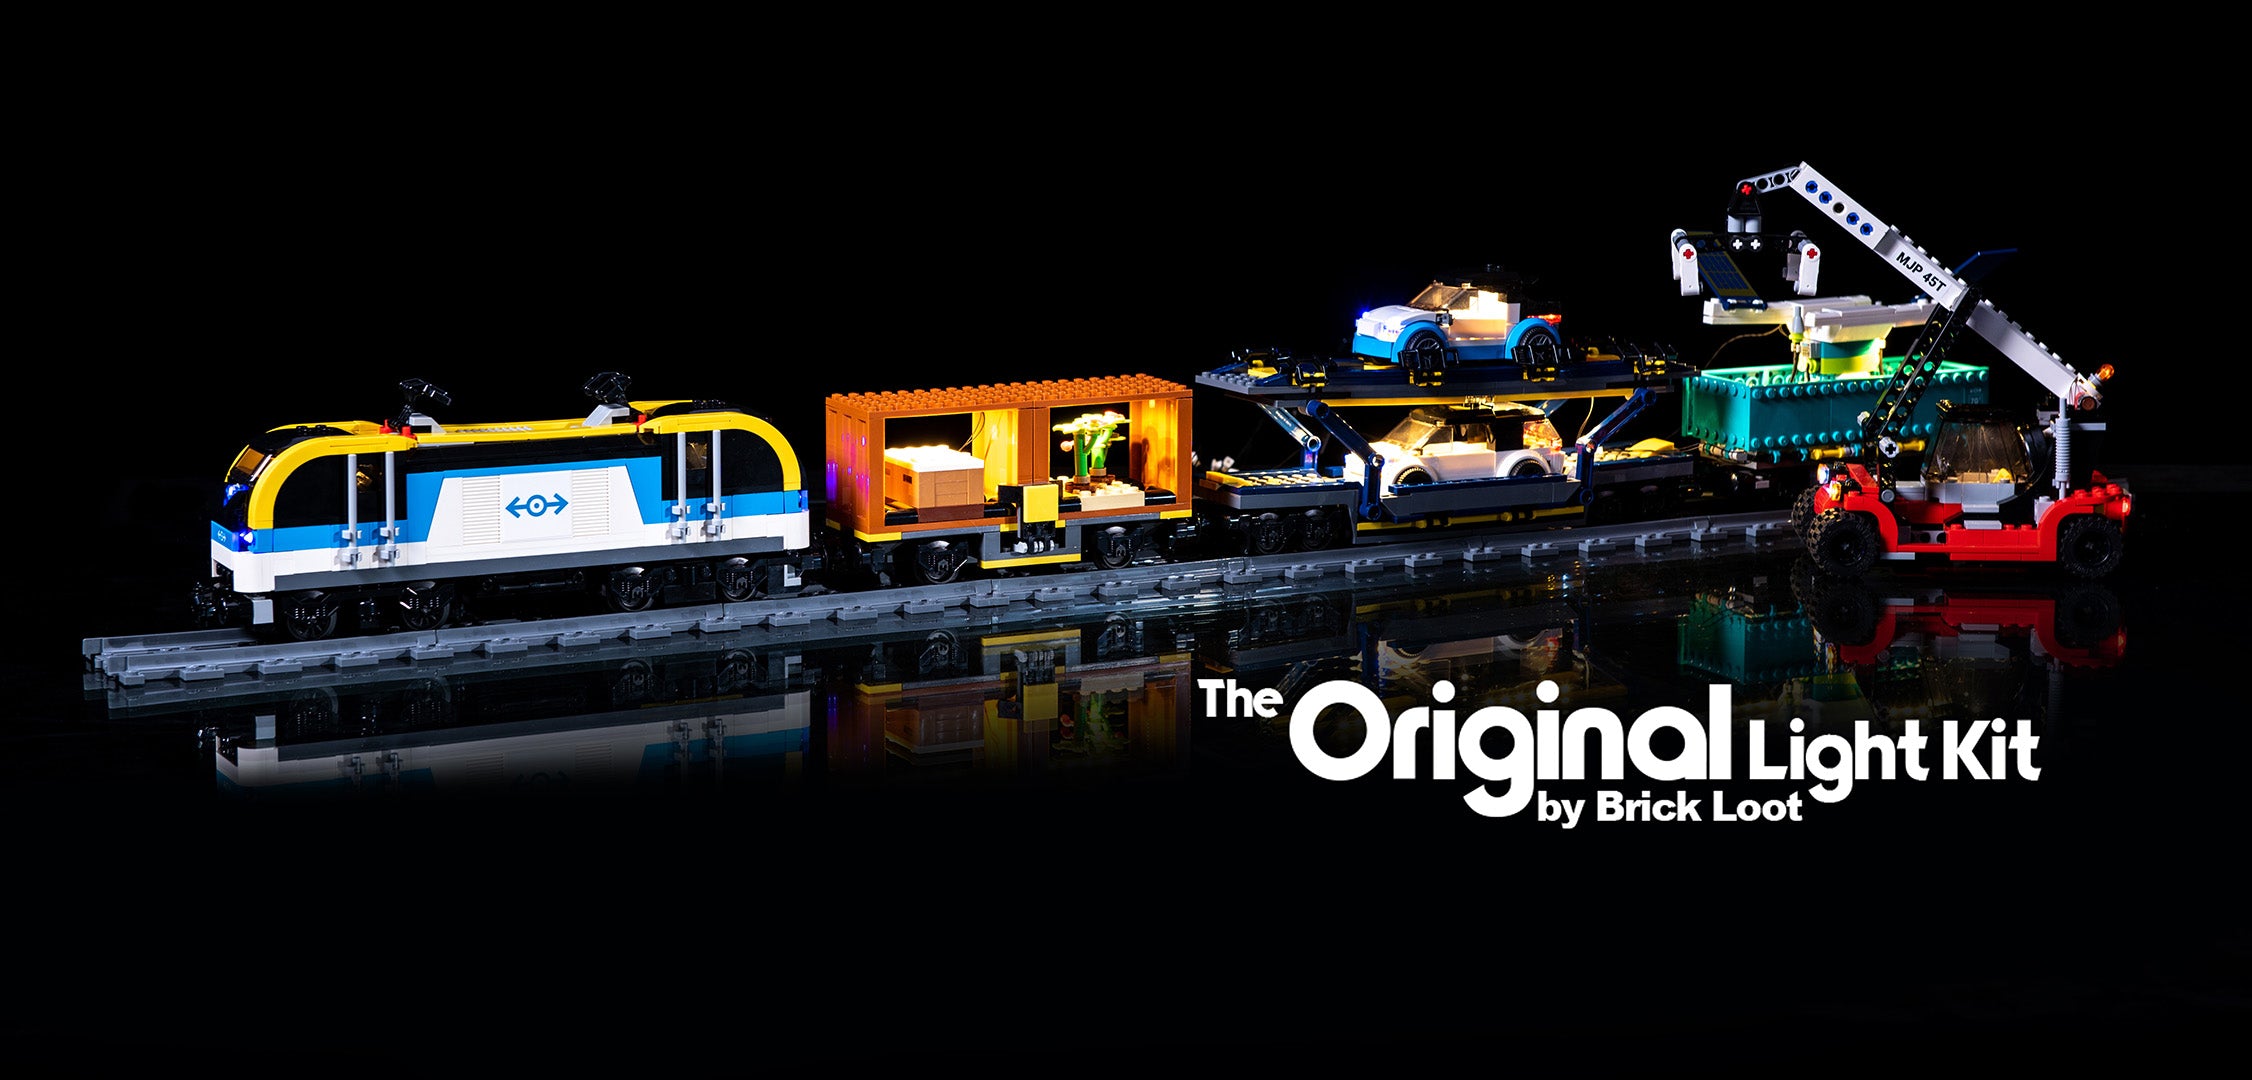 100%Original]Lego 60336 City Freight Train